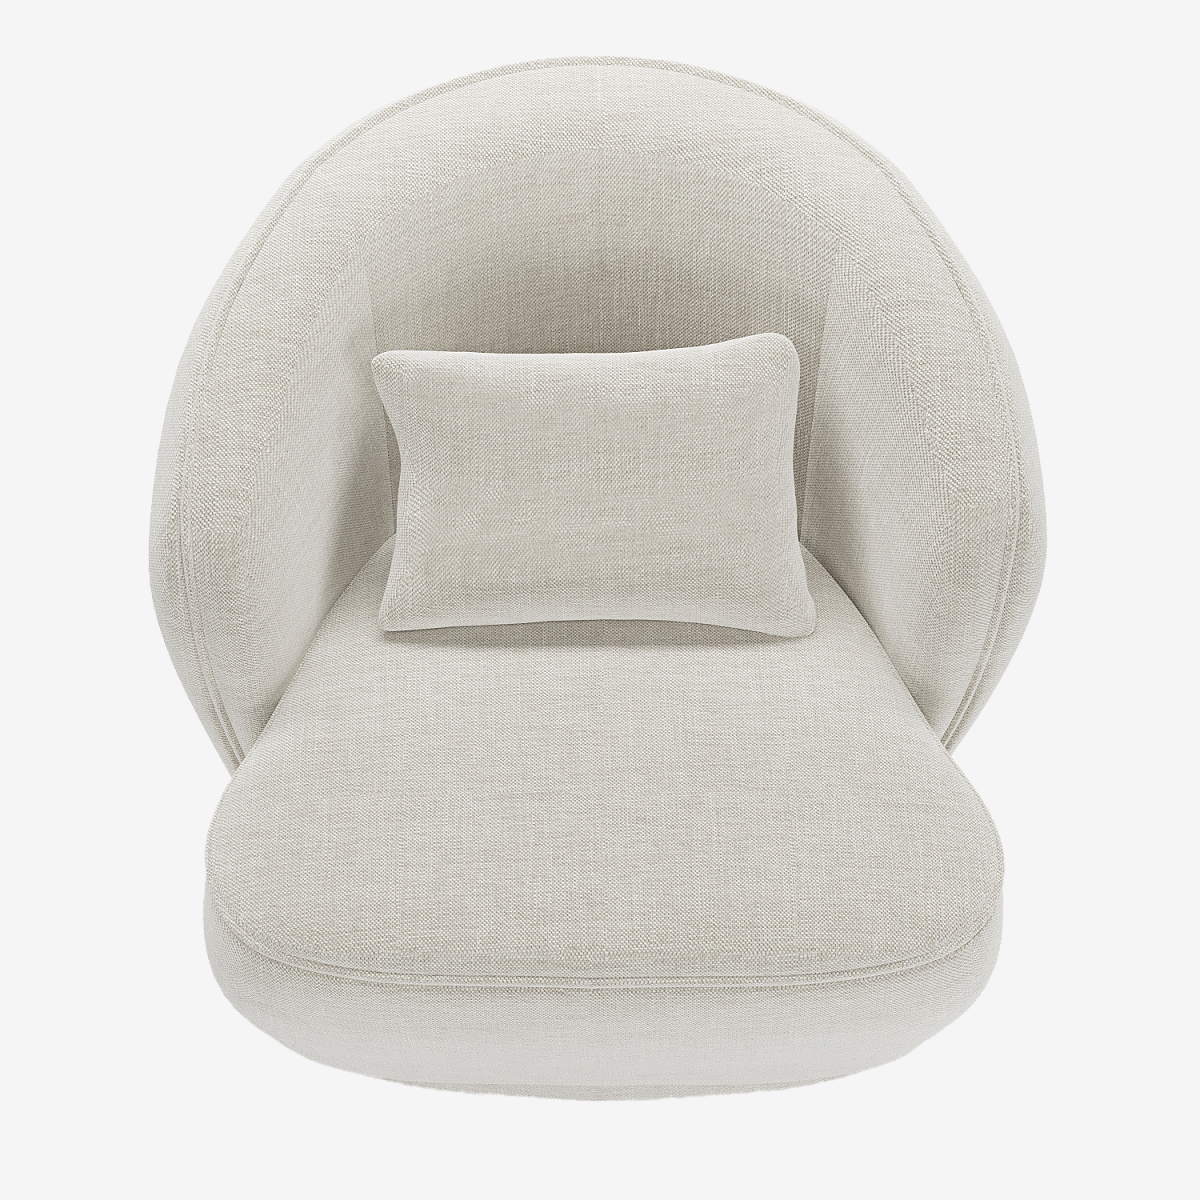 Grand fauteuil de lecture confortable  tissu beige - Potiron Paris, la satisfaction du fauteuil design et confortable pas cher